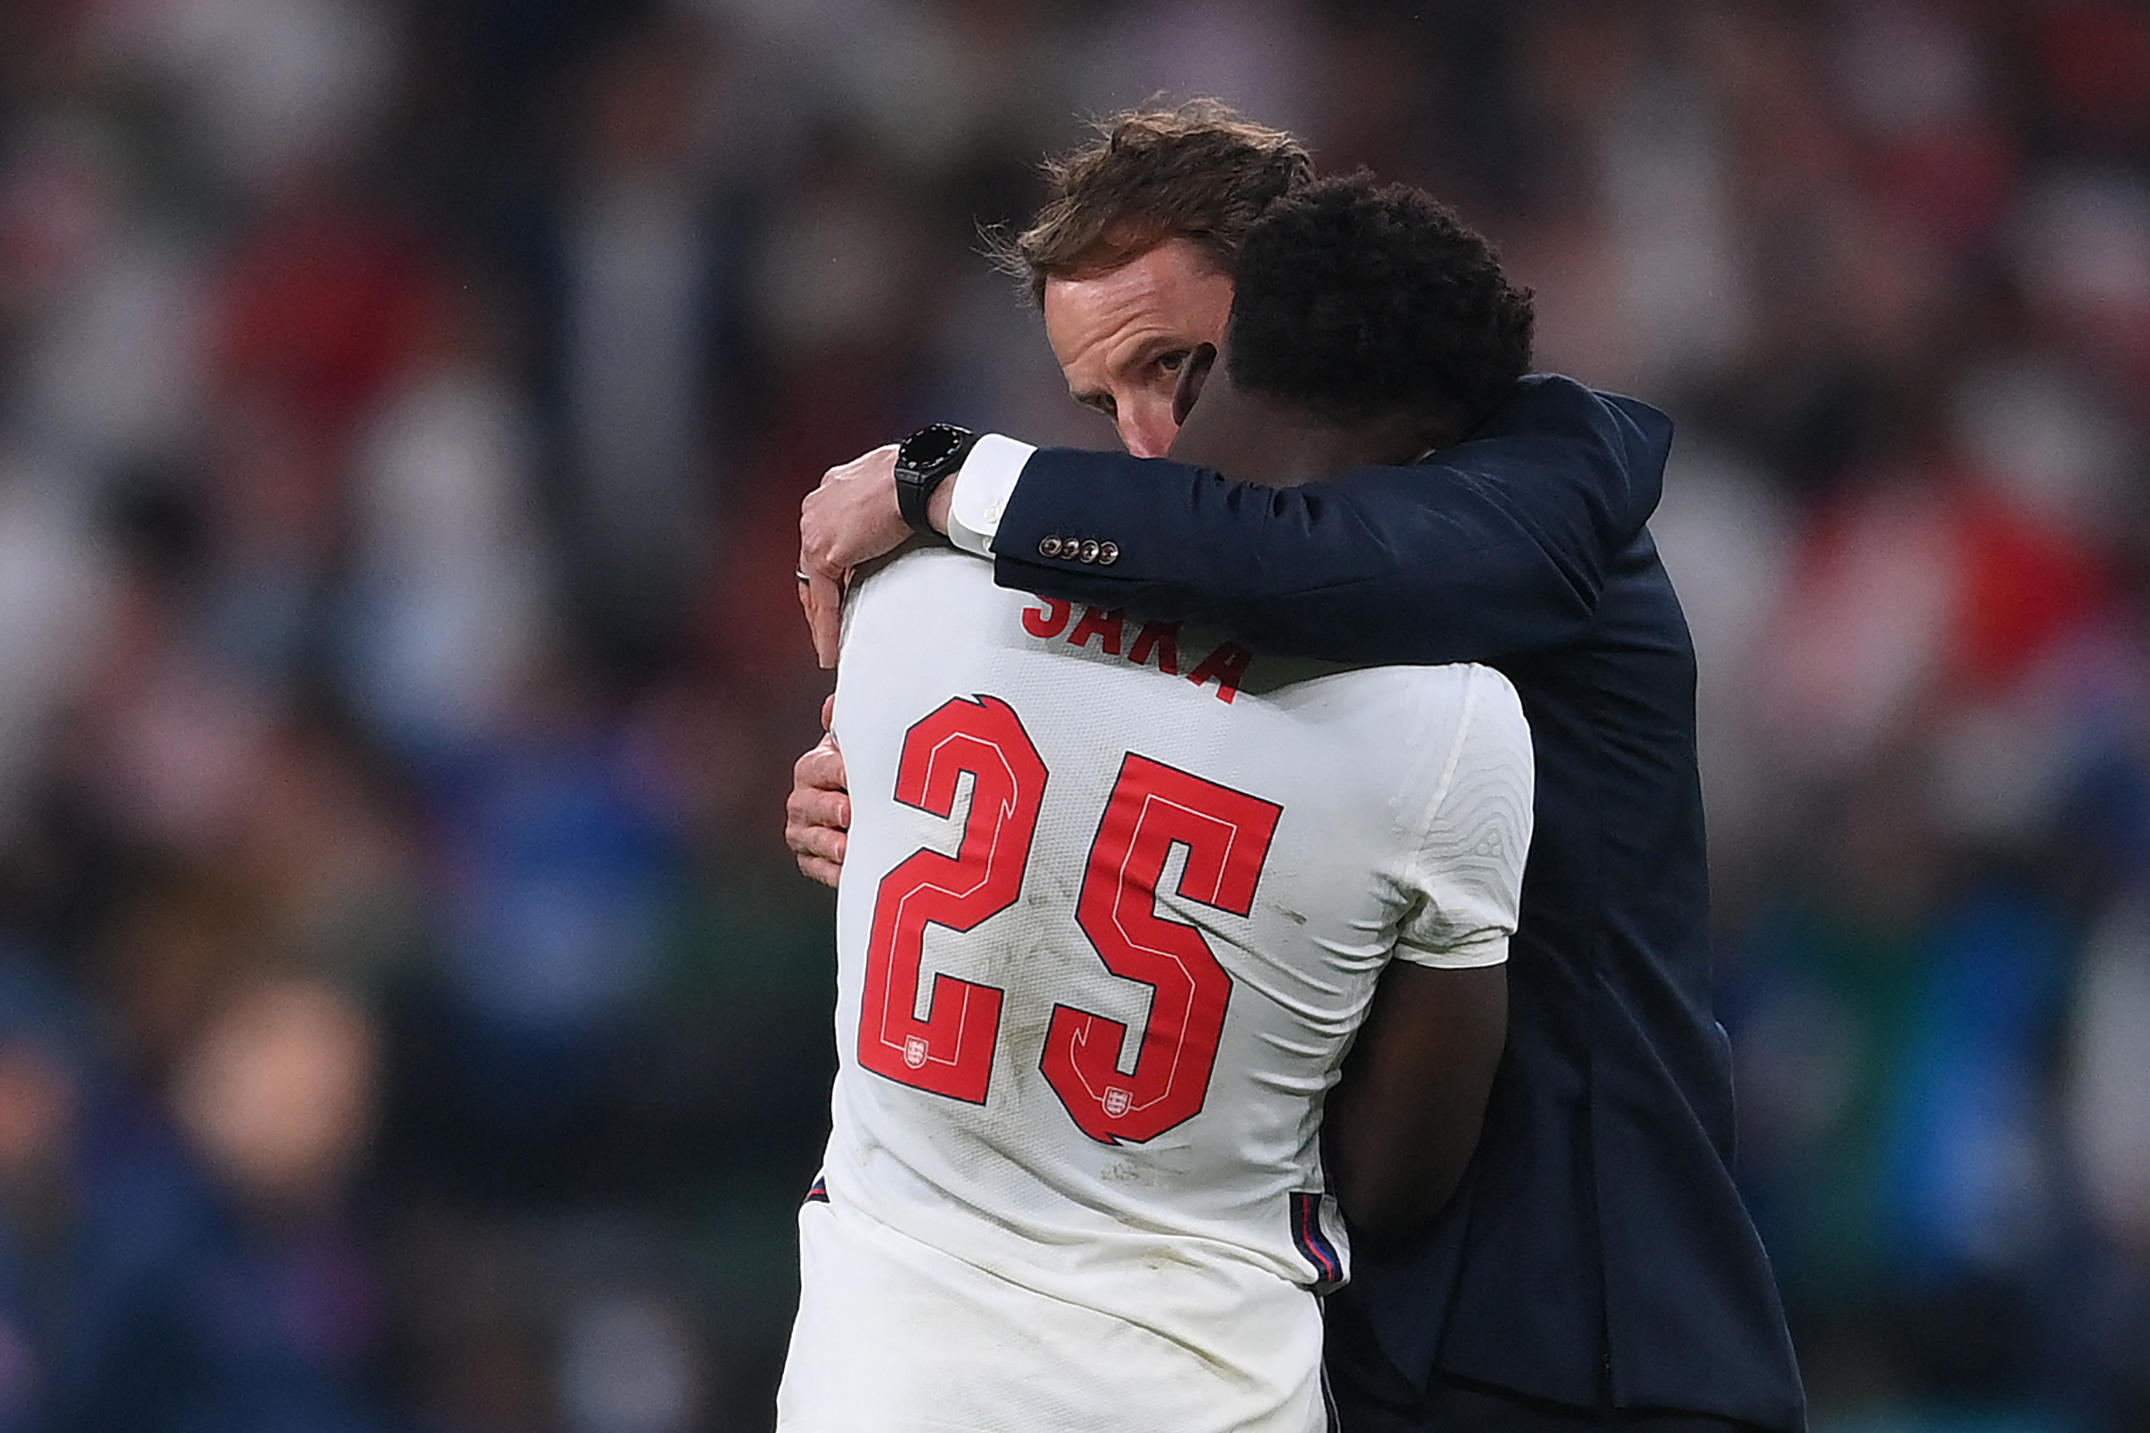 Après son échec aux tirs au but, Bukayo Saka, en larmes, est consolé par son sélectionneur Gareth Southgate. AFP/Pool/Laurence Griffiths